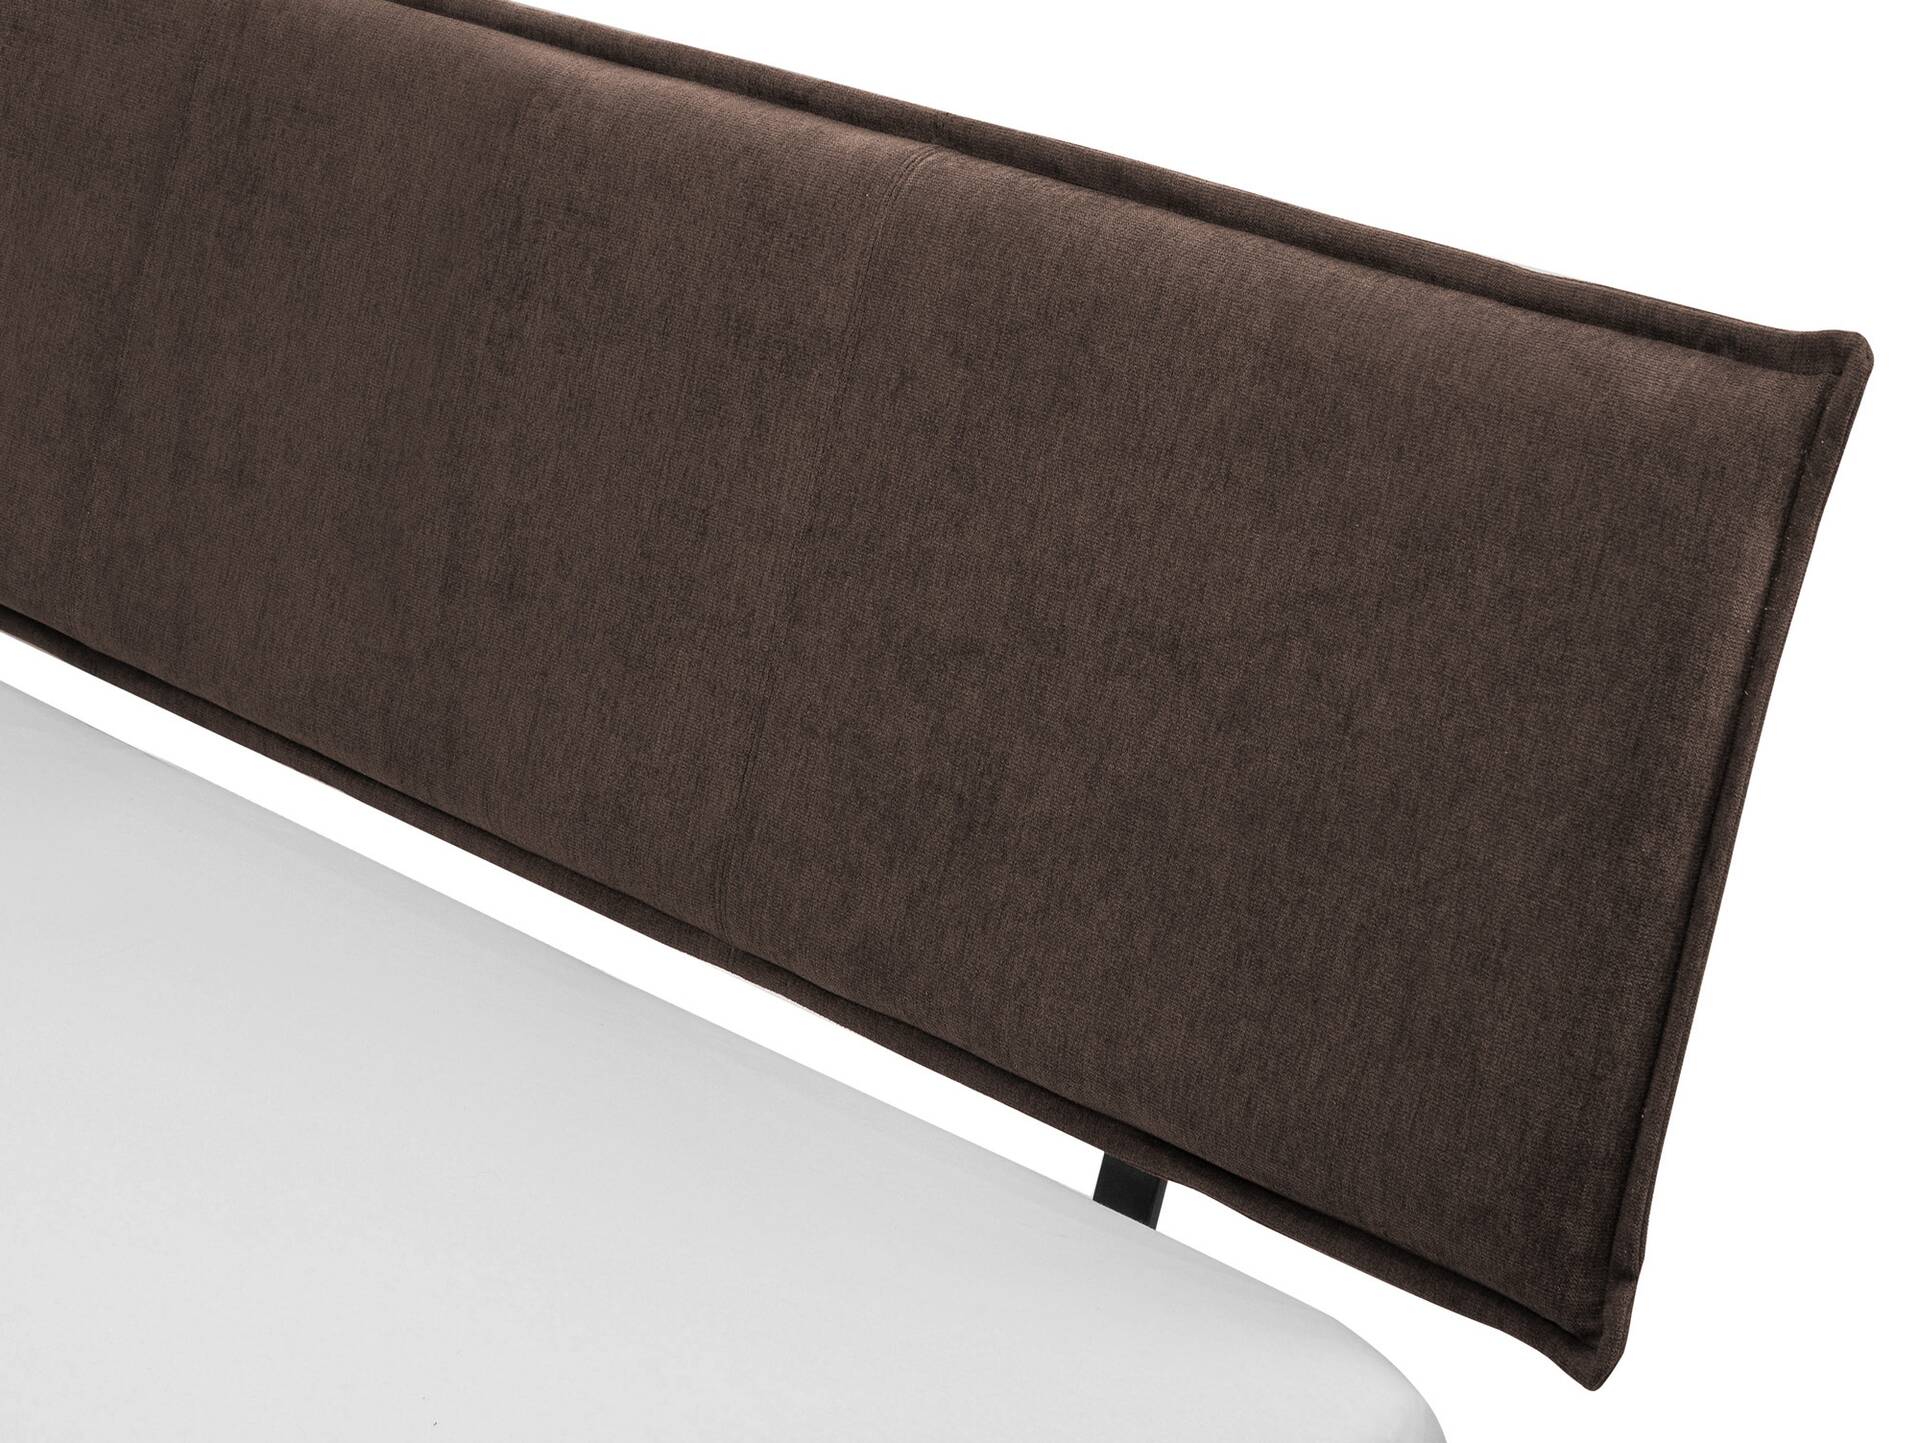 LUKY Bett Metallfuß, mit Polsterkopfteil, Material Massivholz, Fichte massiv 200 x 220 cm | weiss | Stoff Braun